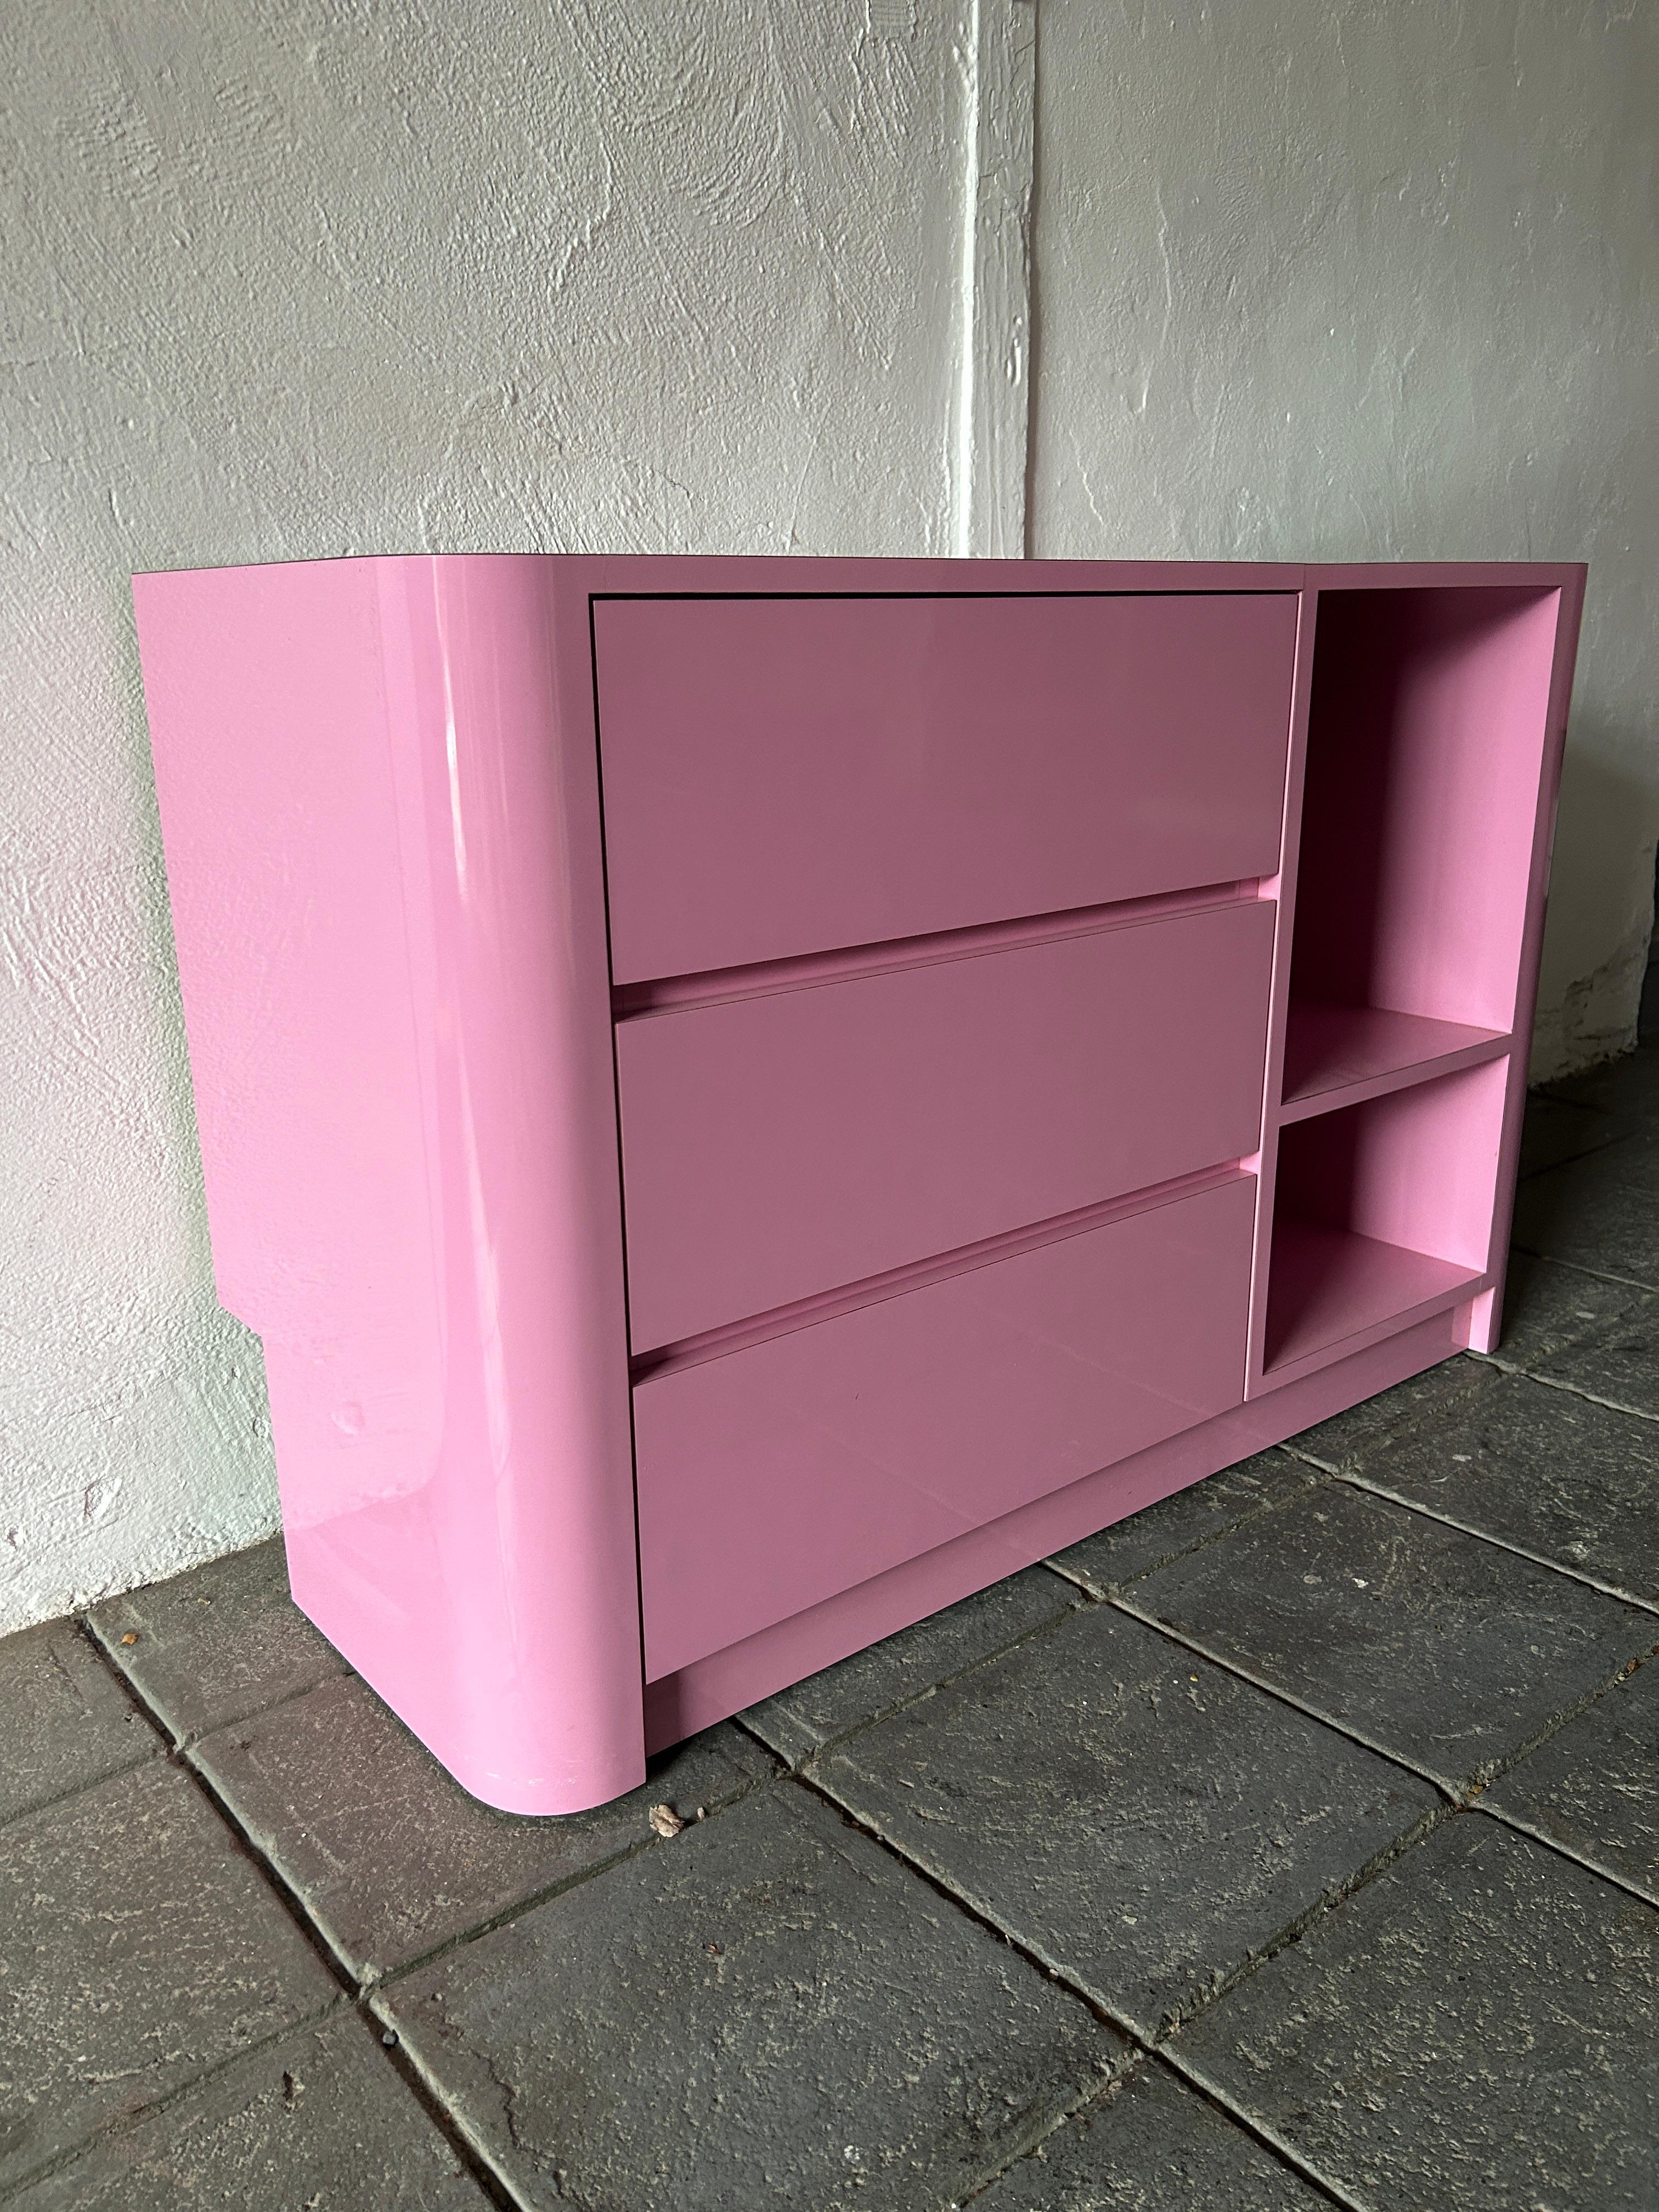 Schöne Post moderne benutzerdefinierte Bubblegum rosa Glanz Laminat 3 Schublade Kommode oder Kredenz circa 1980. Sehr sauber innen und außen fast wie neu. Sehen Sie sich Fotos an. Auf der linken Seite befinden sich (3) Schubladen und auf der rechten